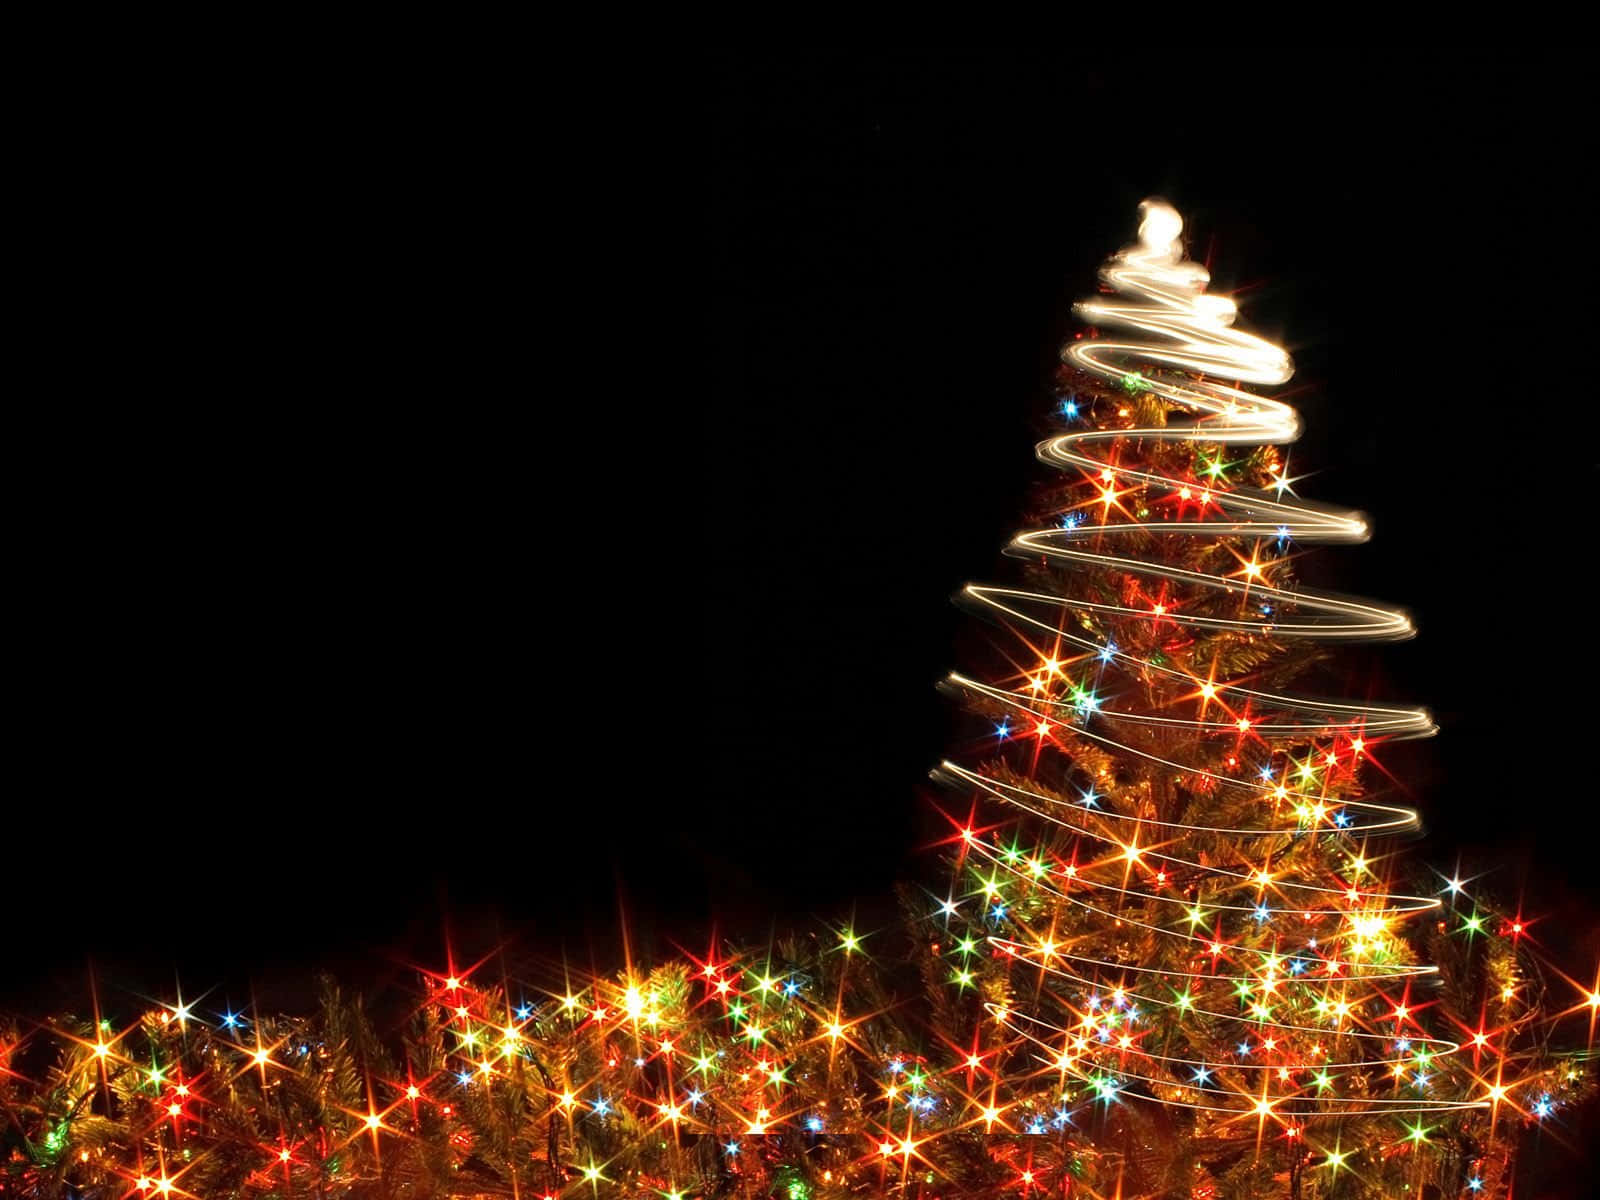 Godetevilo Spirito Natalizio Con La Vostra Famiglia - Le Luci Di Natale Illuminano La Vostra Casa.